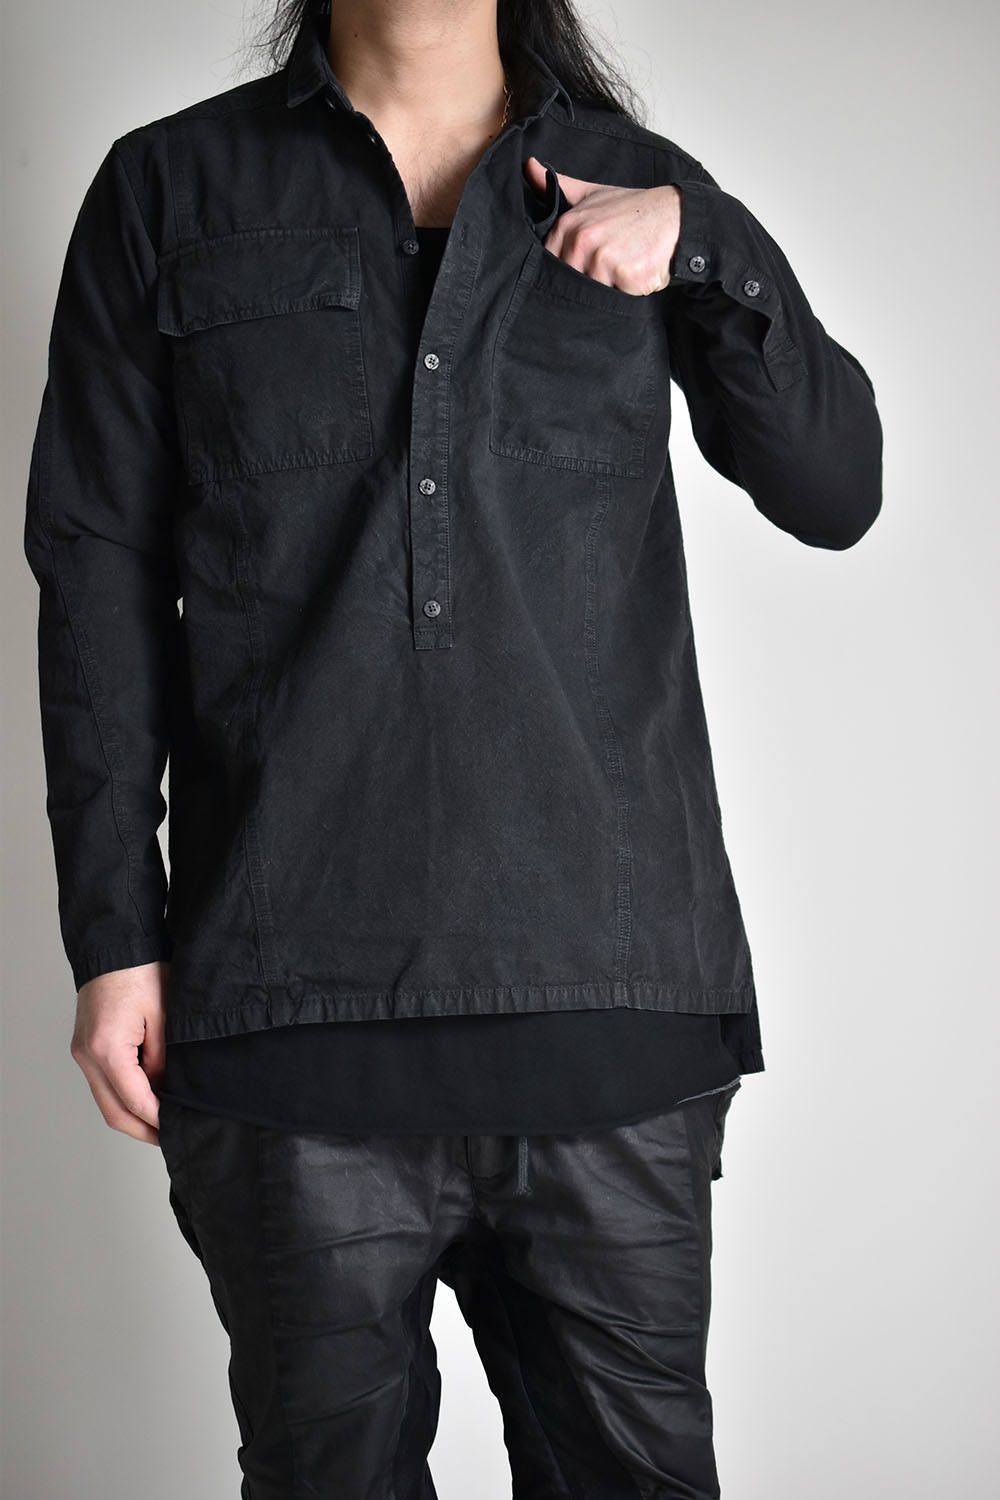 Switching Shirts Pullover"Black"/スウィッチングシャツプルオーバー"ブラック"